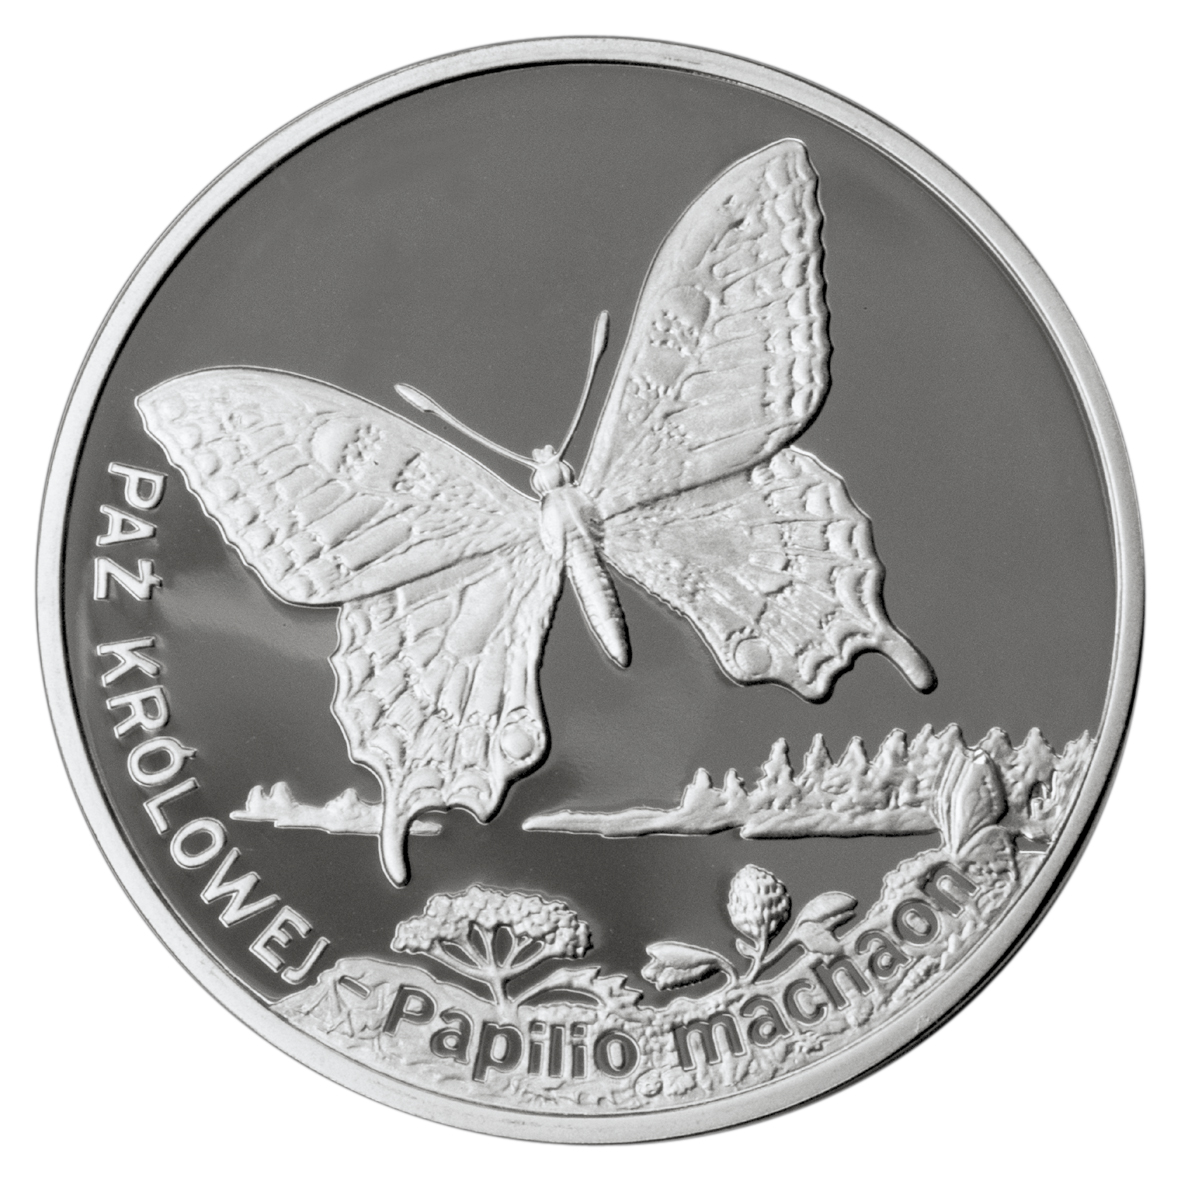 20zl-paz-krolowej-lac-papilio-machano-rewers-monety